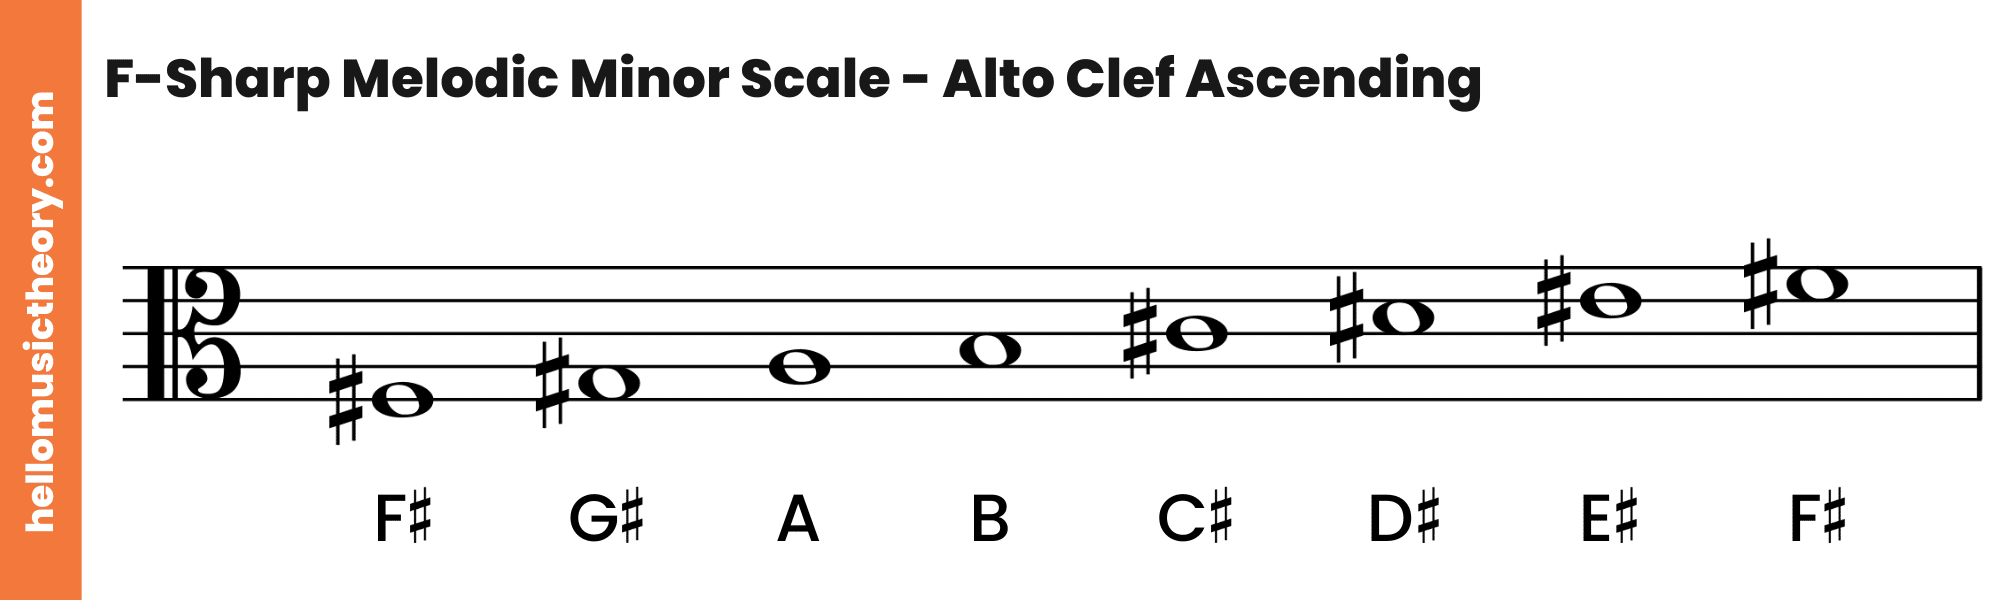 F-Sharp Melodic Minor Scale Alto Clef Ascending